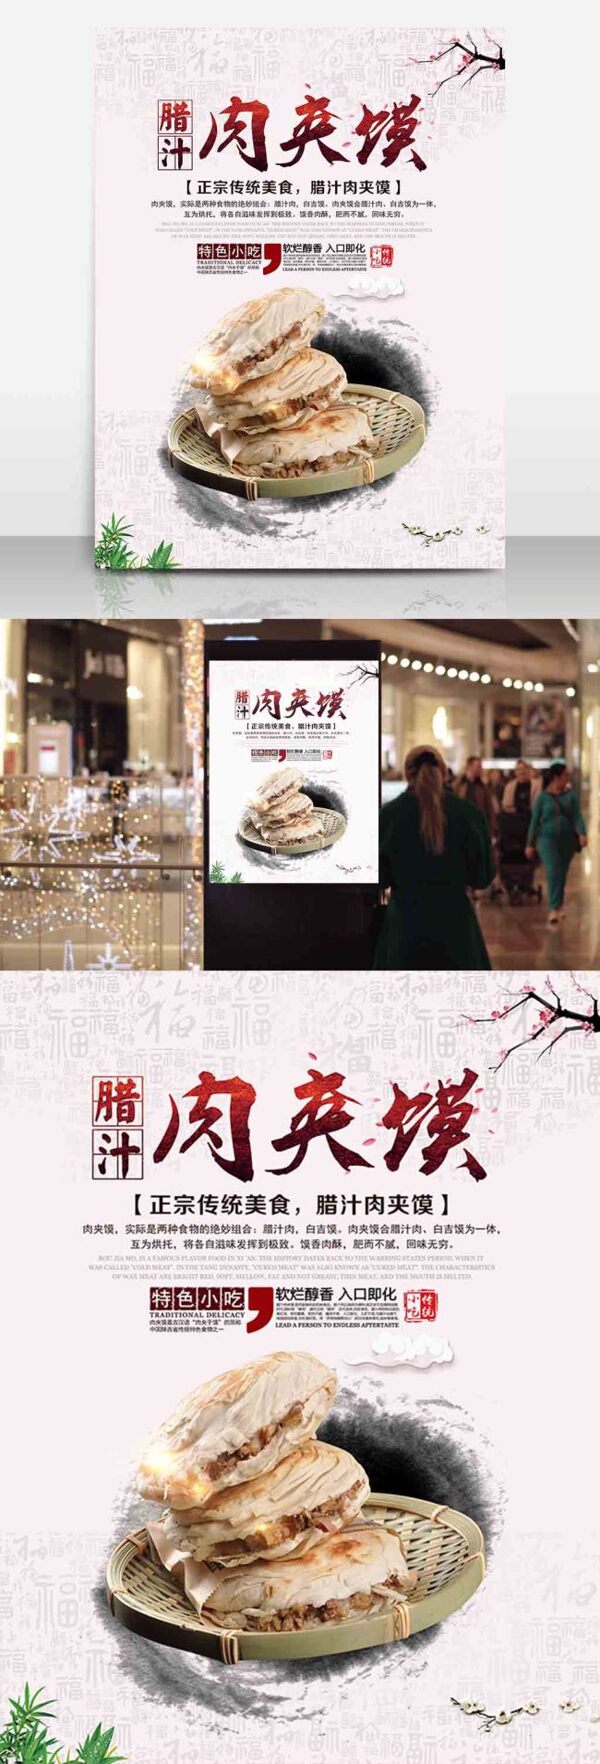 西安传统小吃腊汁肉夹馍美食海报